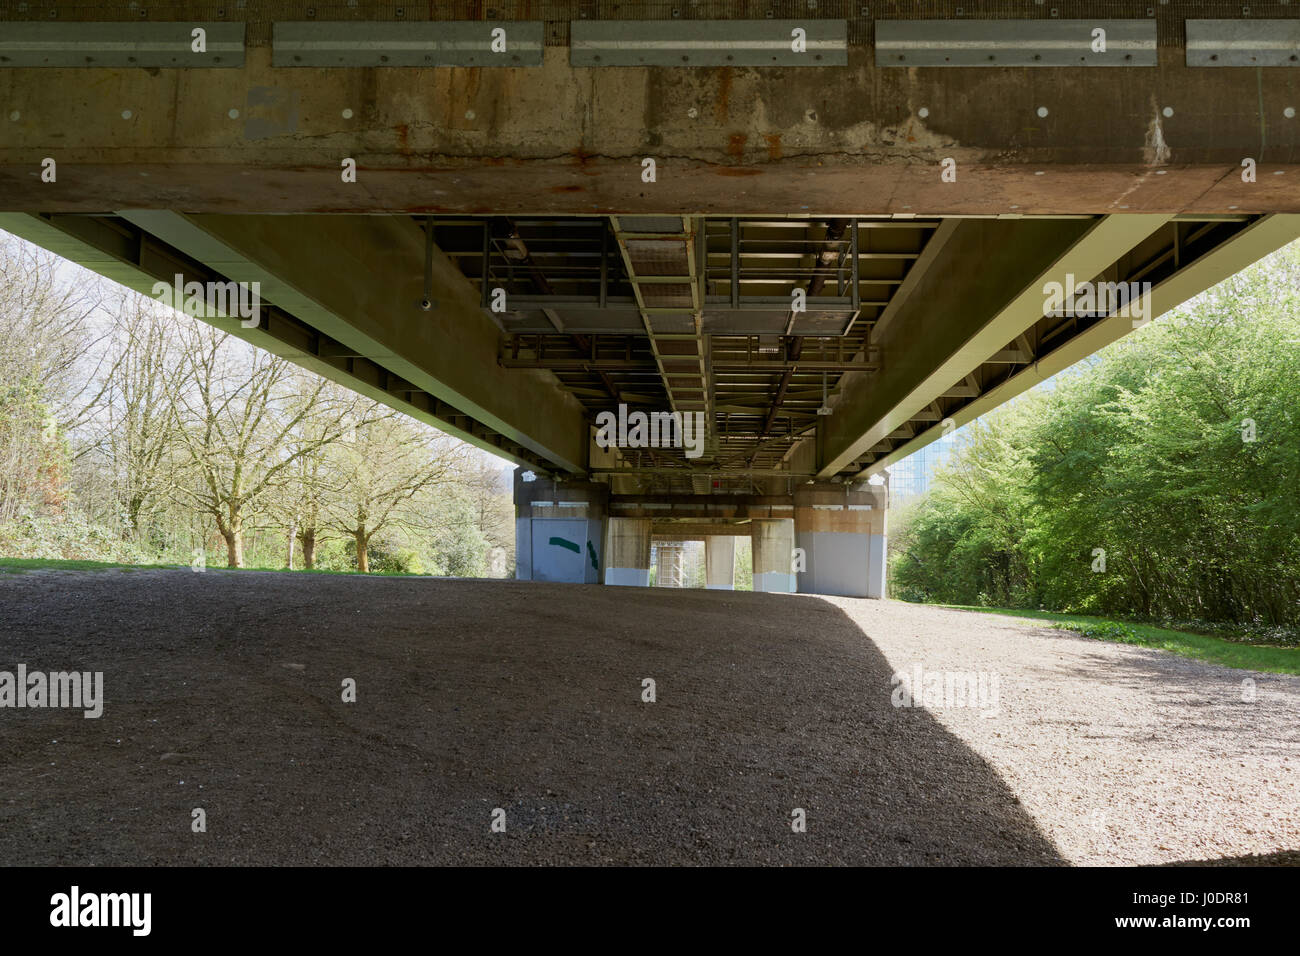 Underside of M4 bridge Stock Photo